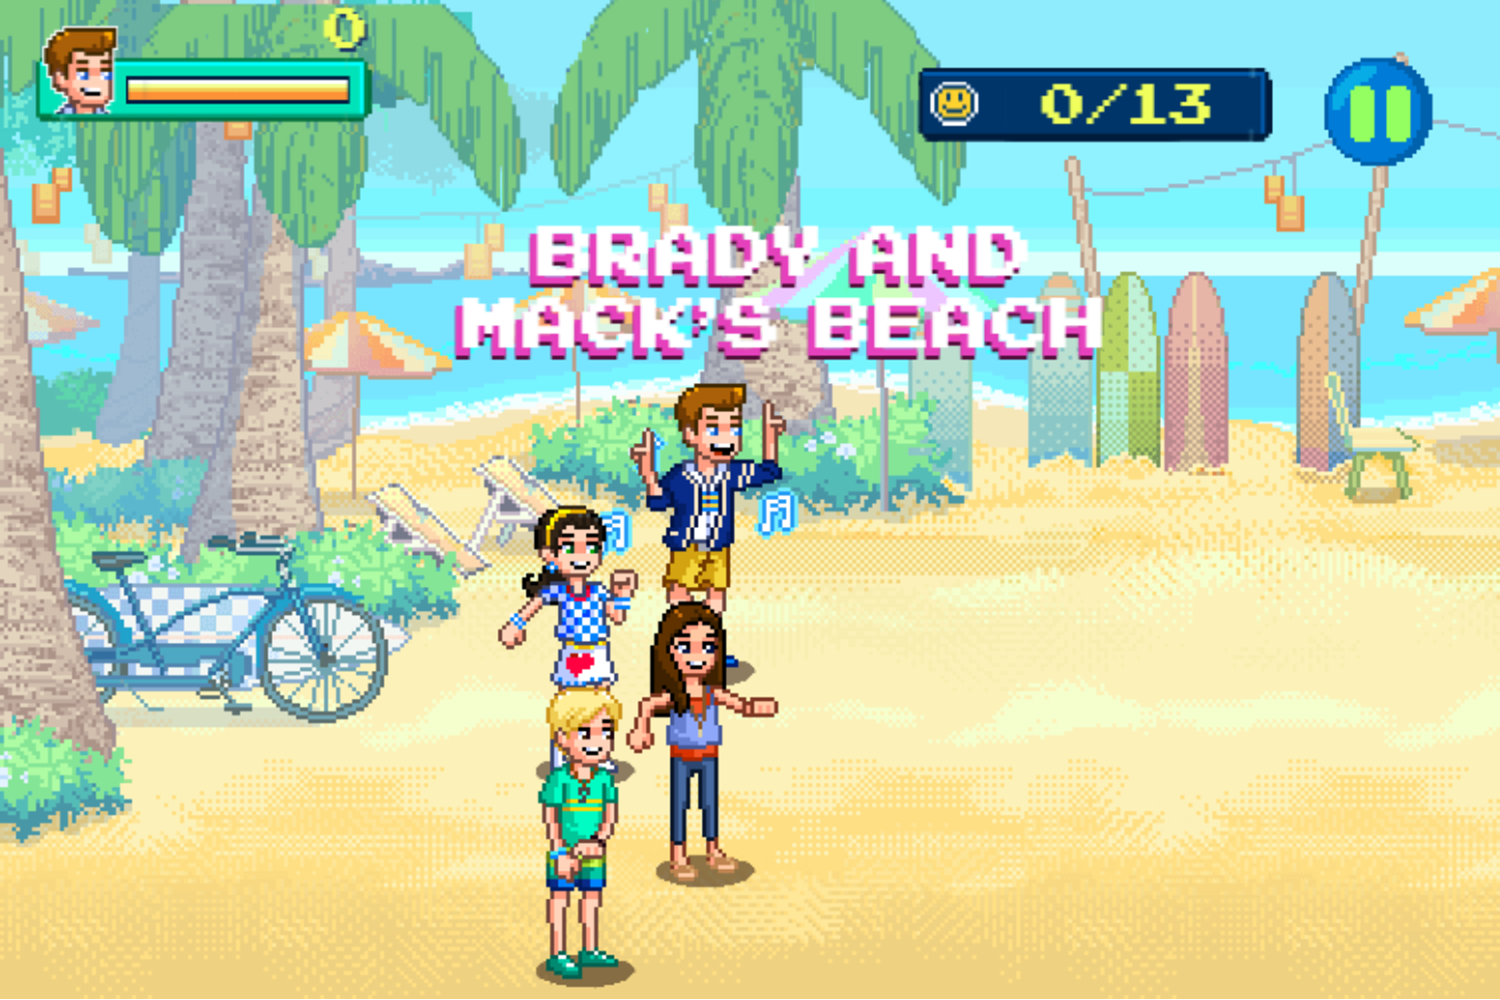 Teen Beach 2 Beach Bop Adventure Game Start Screenshot.